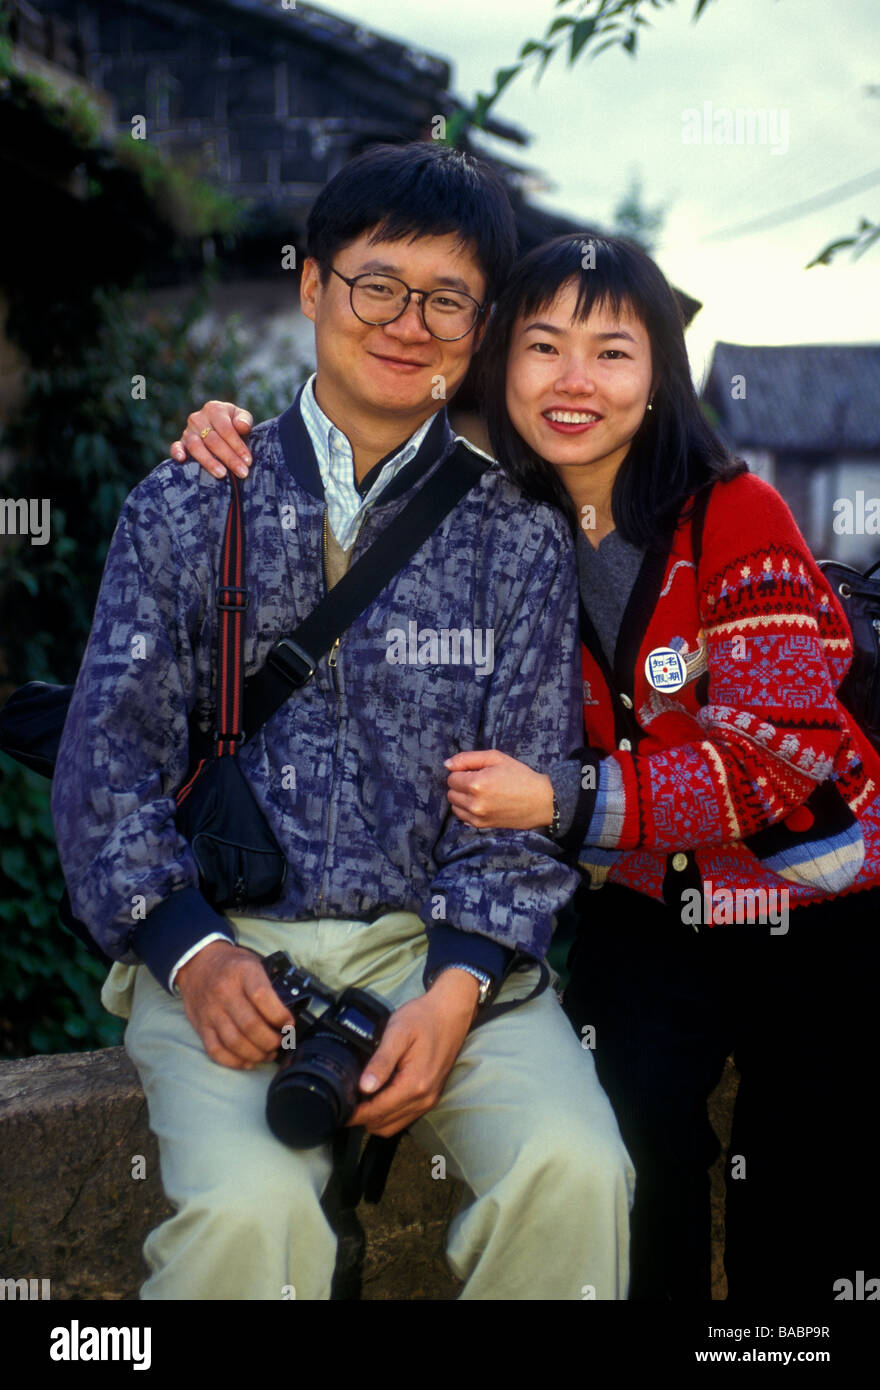 Il popolo cinese, uomo cinese, donna cinese, coppia giovane, turisti, contatto visivo, vista frontale, ritratto, Città Vecchia di Lijiang, nella provincia dello Yunnan in Cina Foto Stock